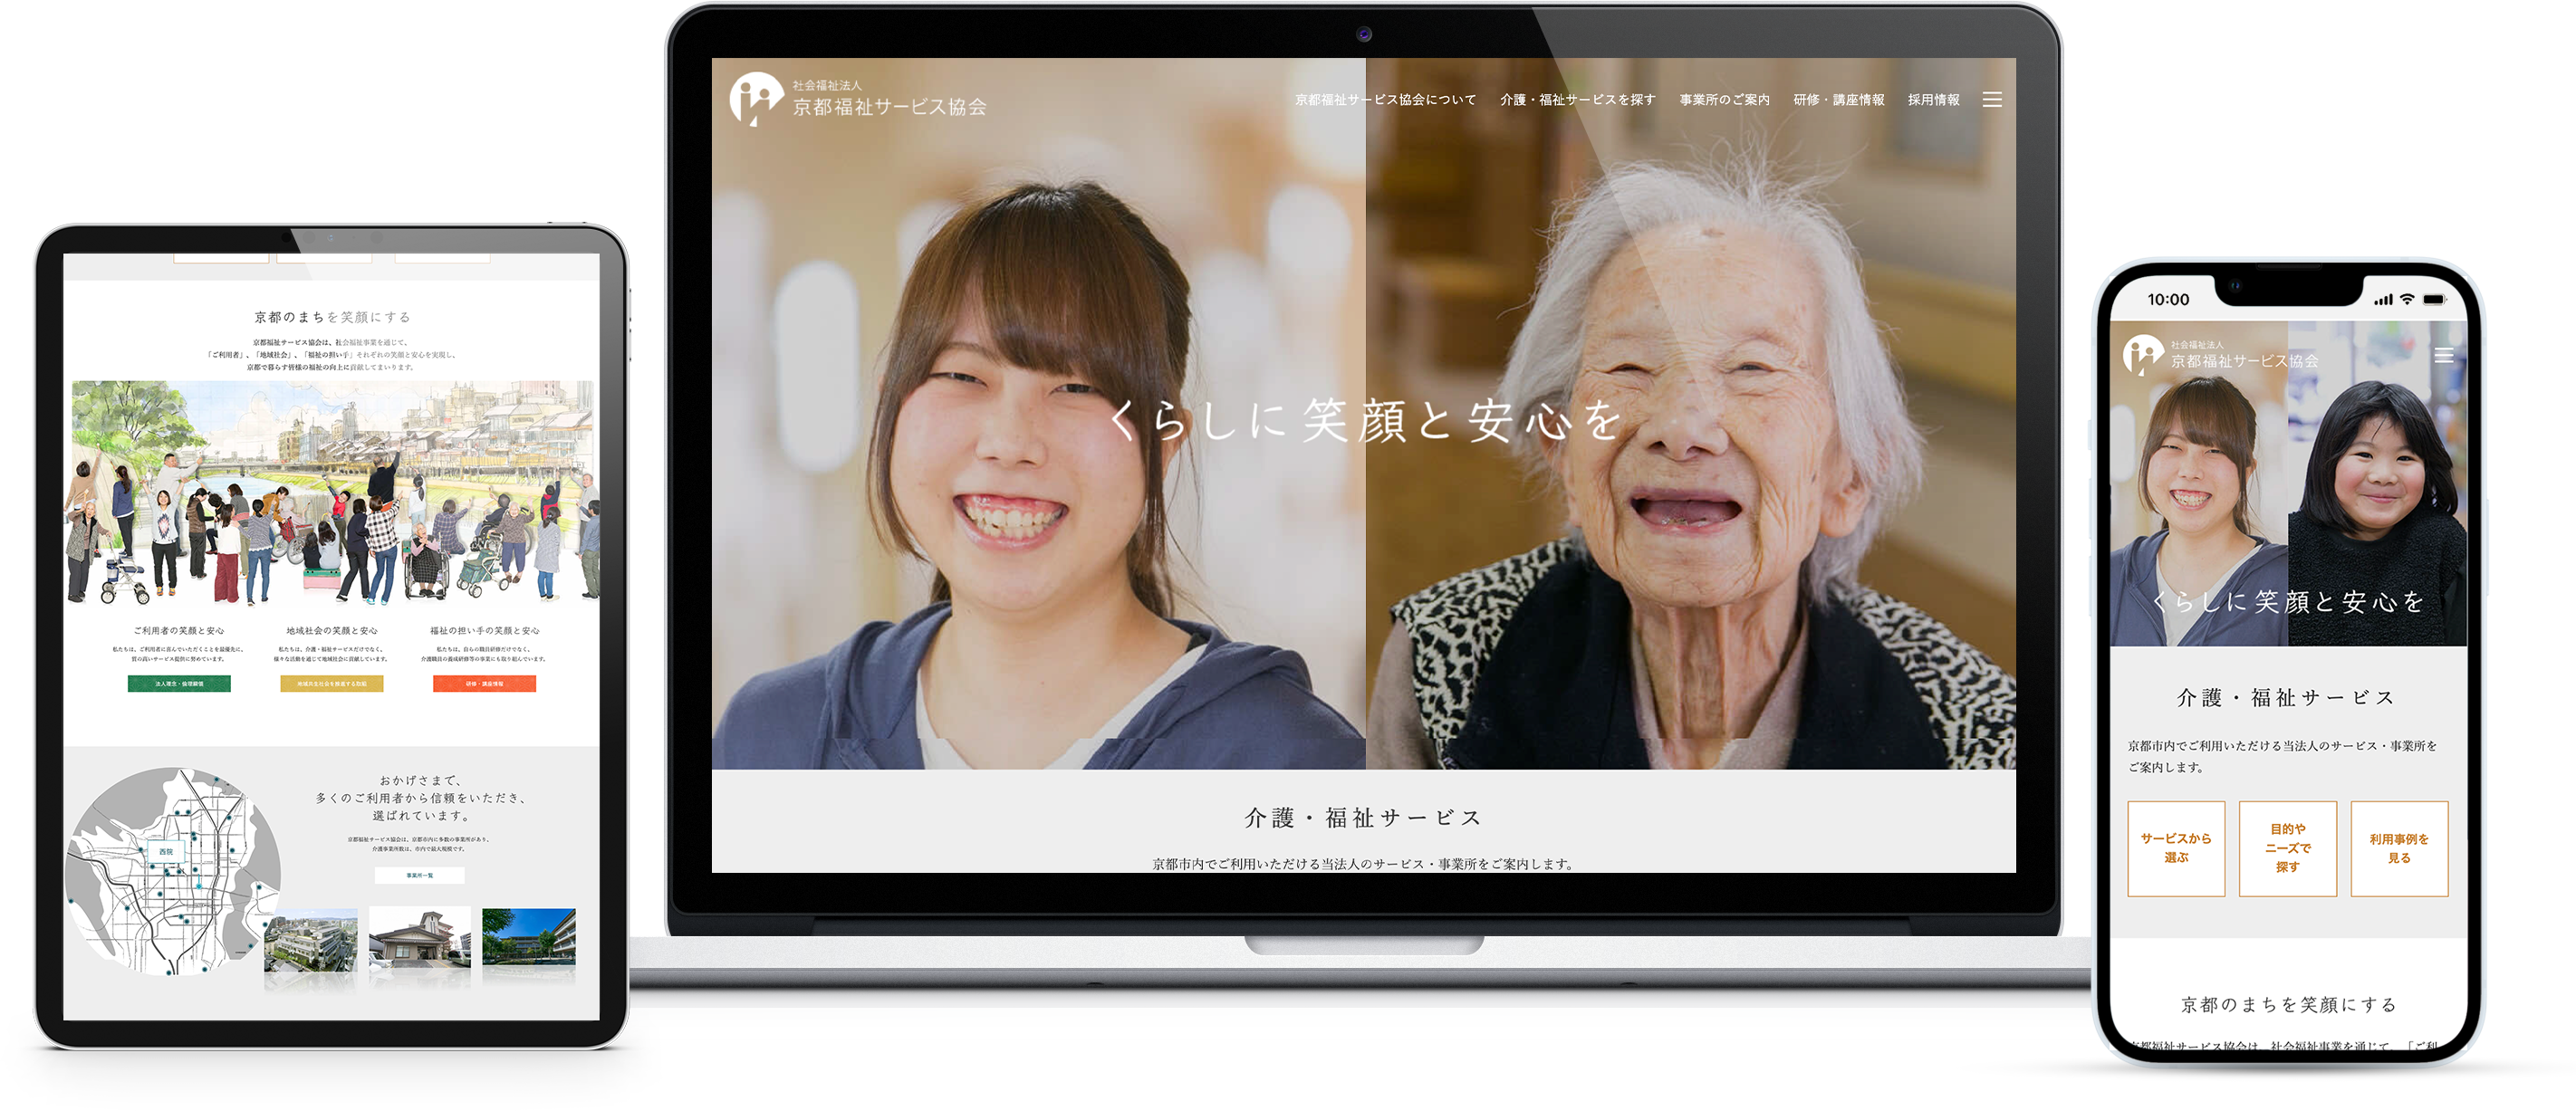 社会福祉法人 京都福祉サービス協会のwebサイトのモックアップ